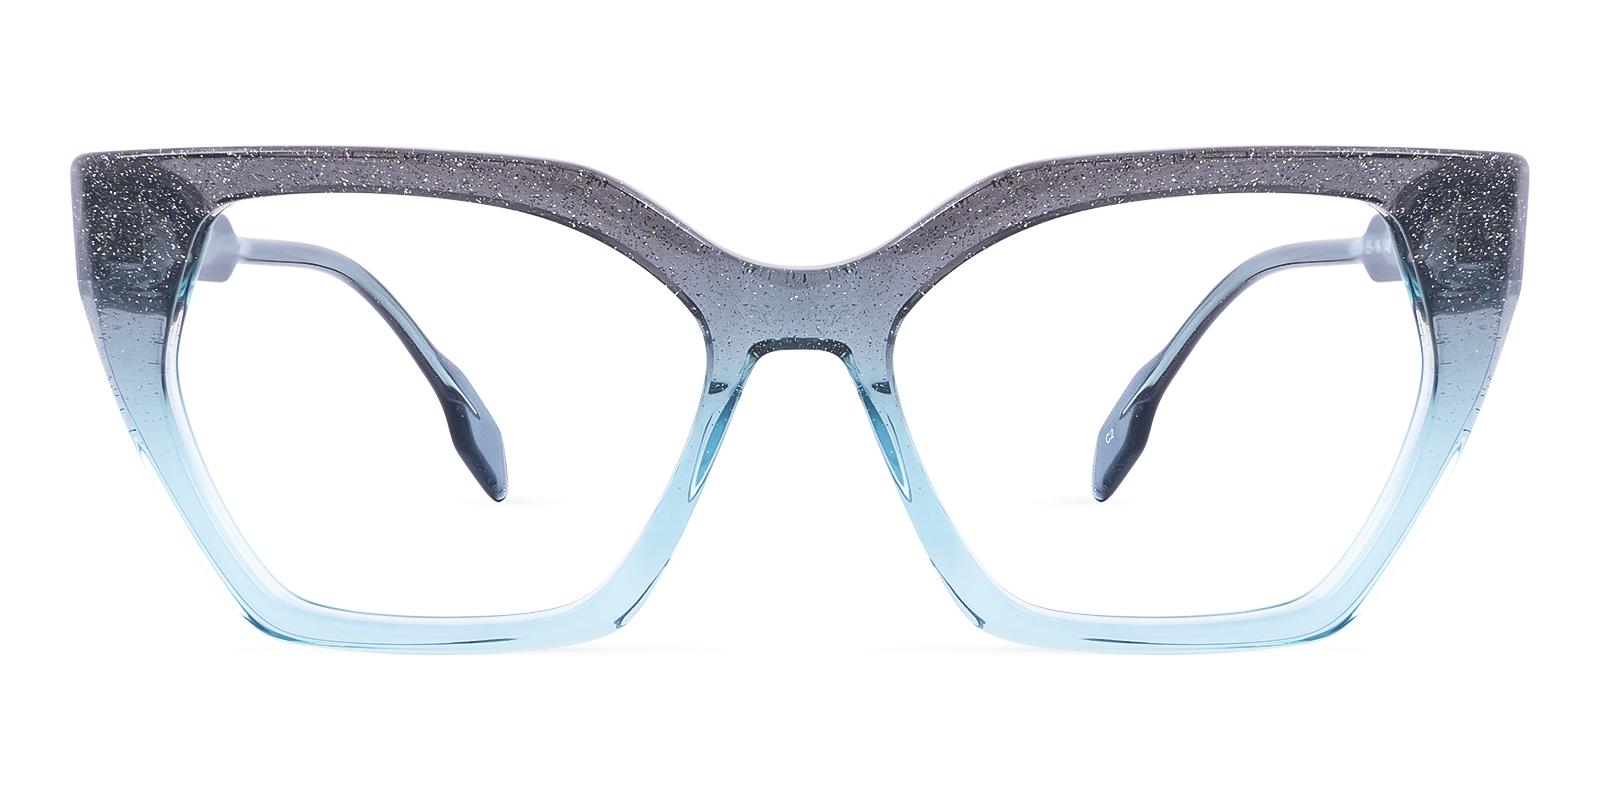 Jetsam Blue Acetate Eyeglasses , UniversalBridgeFit Frames from ABBE Glasses